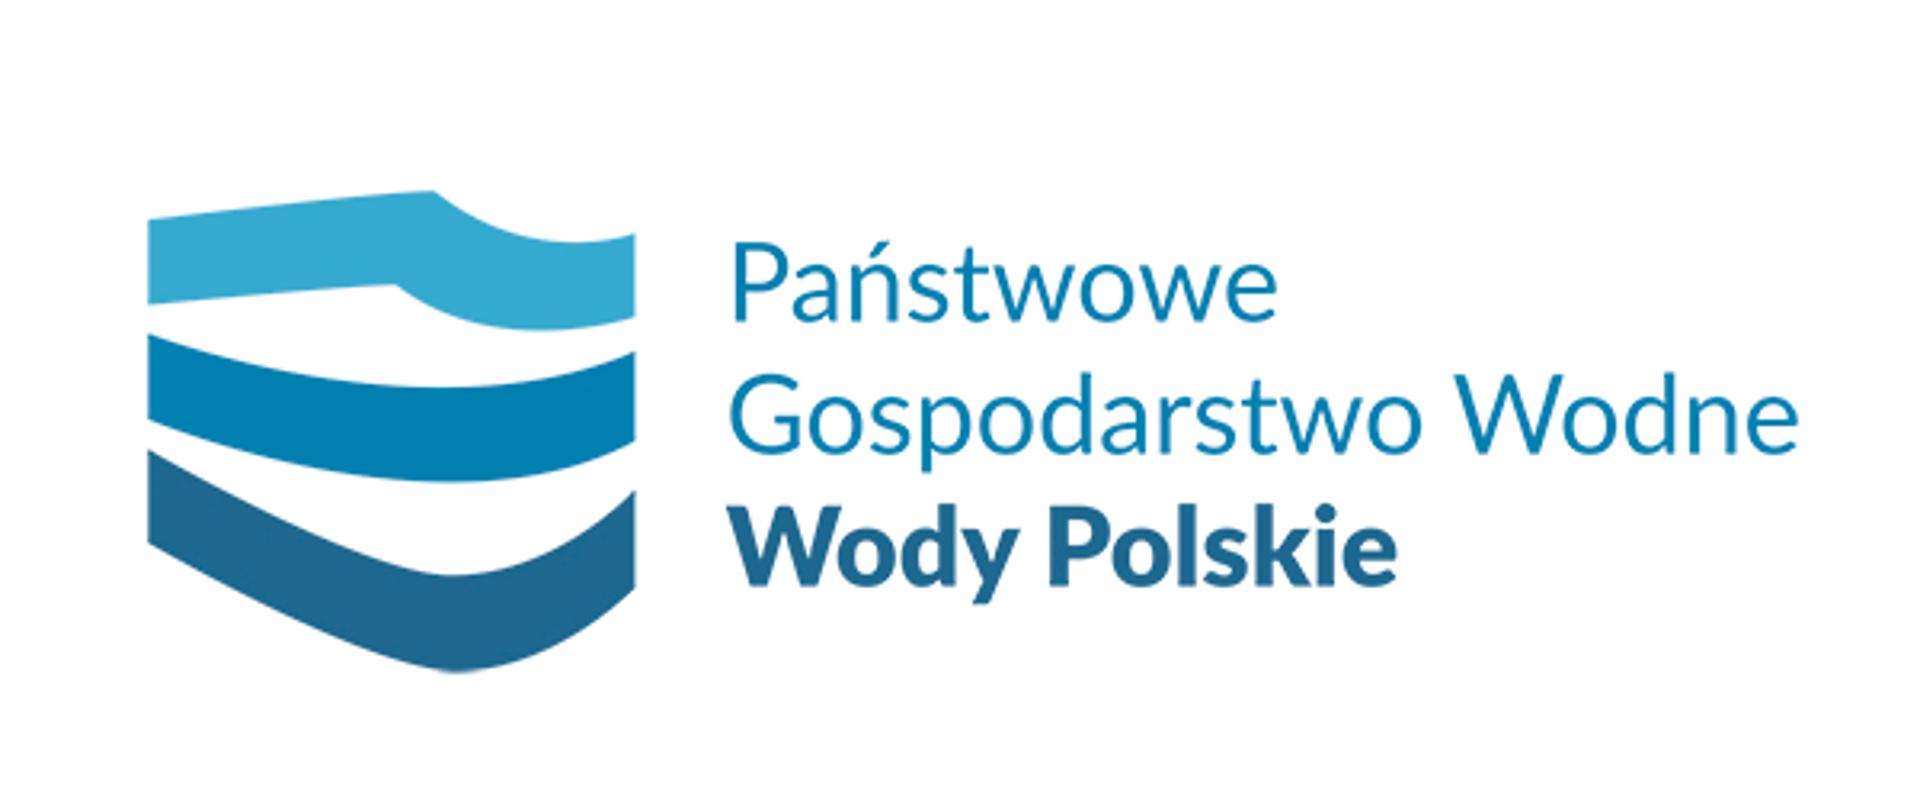 Logo - Wody Polskie - w kształcie poziomego prostokąta. Na białym tle, po lewej, znajduje się logotyp składający się z trzech fal w trzech odcieniach niebieskiego, które kształtem przypominają kontury Polski. Centralnie i w prawo widać niebieski napis - Państwowe Gospodarstwo Wodne Wody Polskie. 